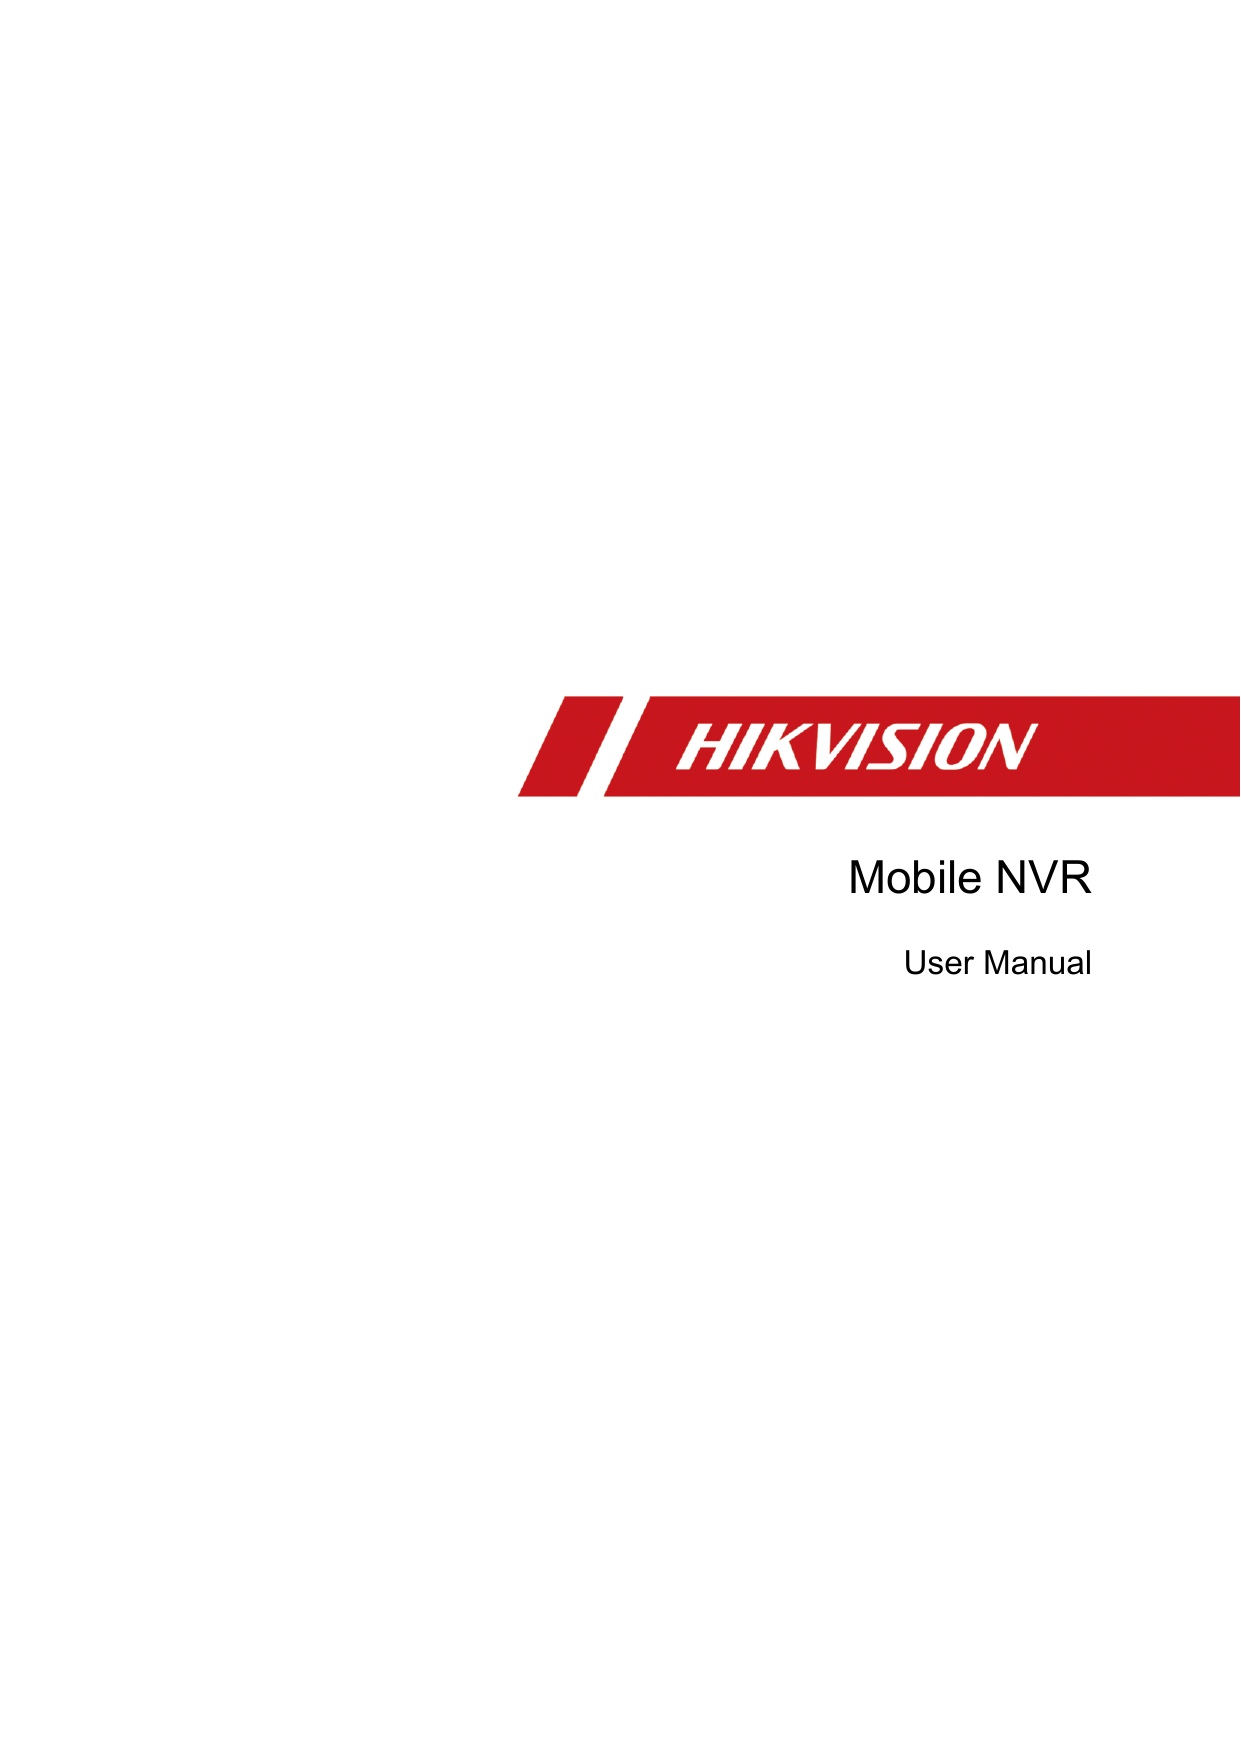             Mobile NVR User Manual       